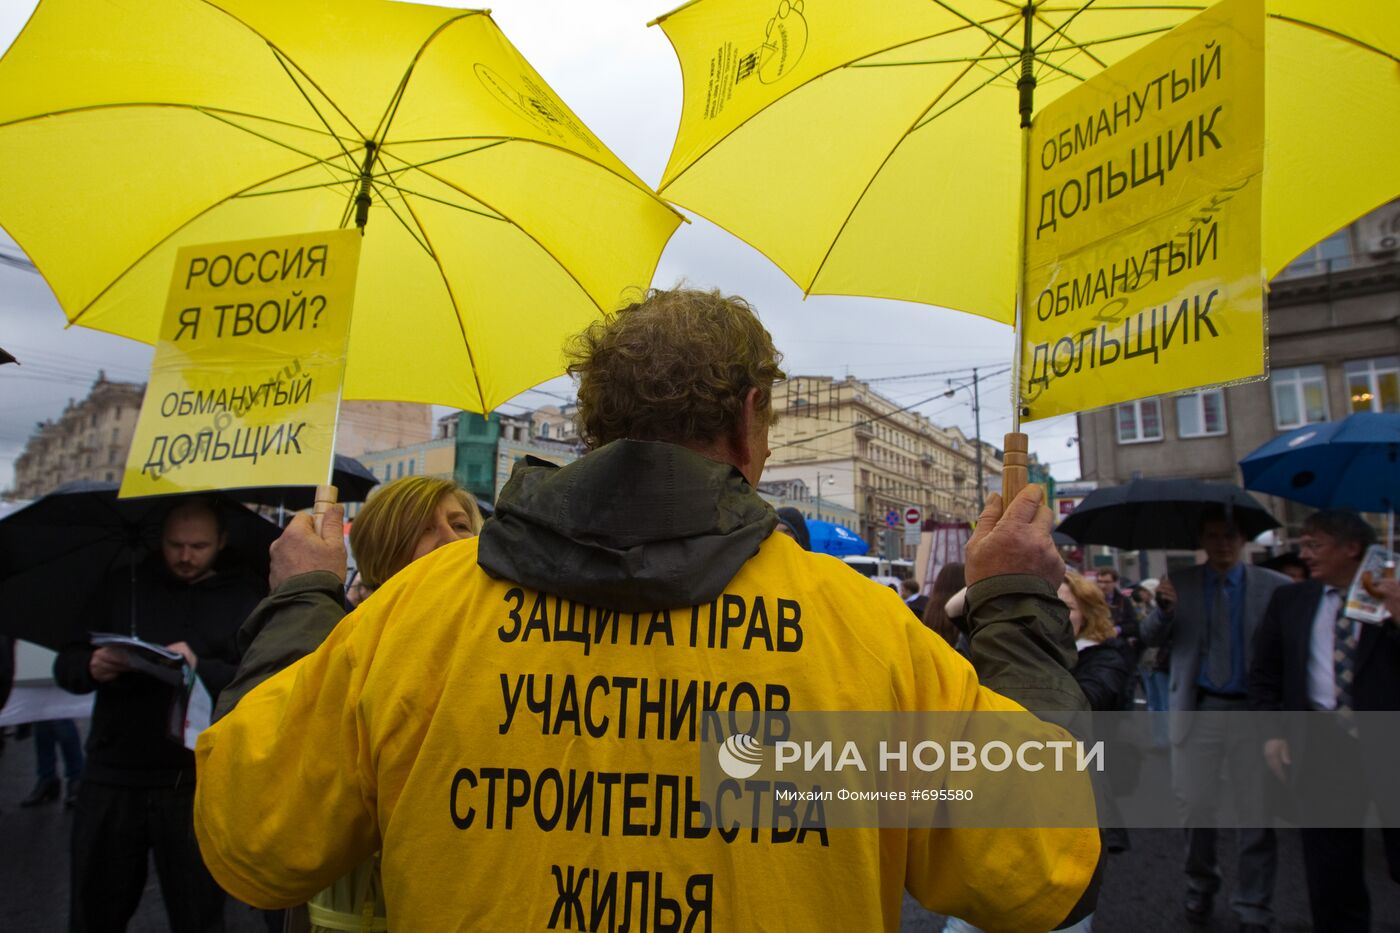 Участники митинга "31 мая - не простим!".